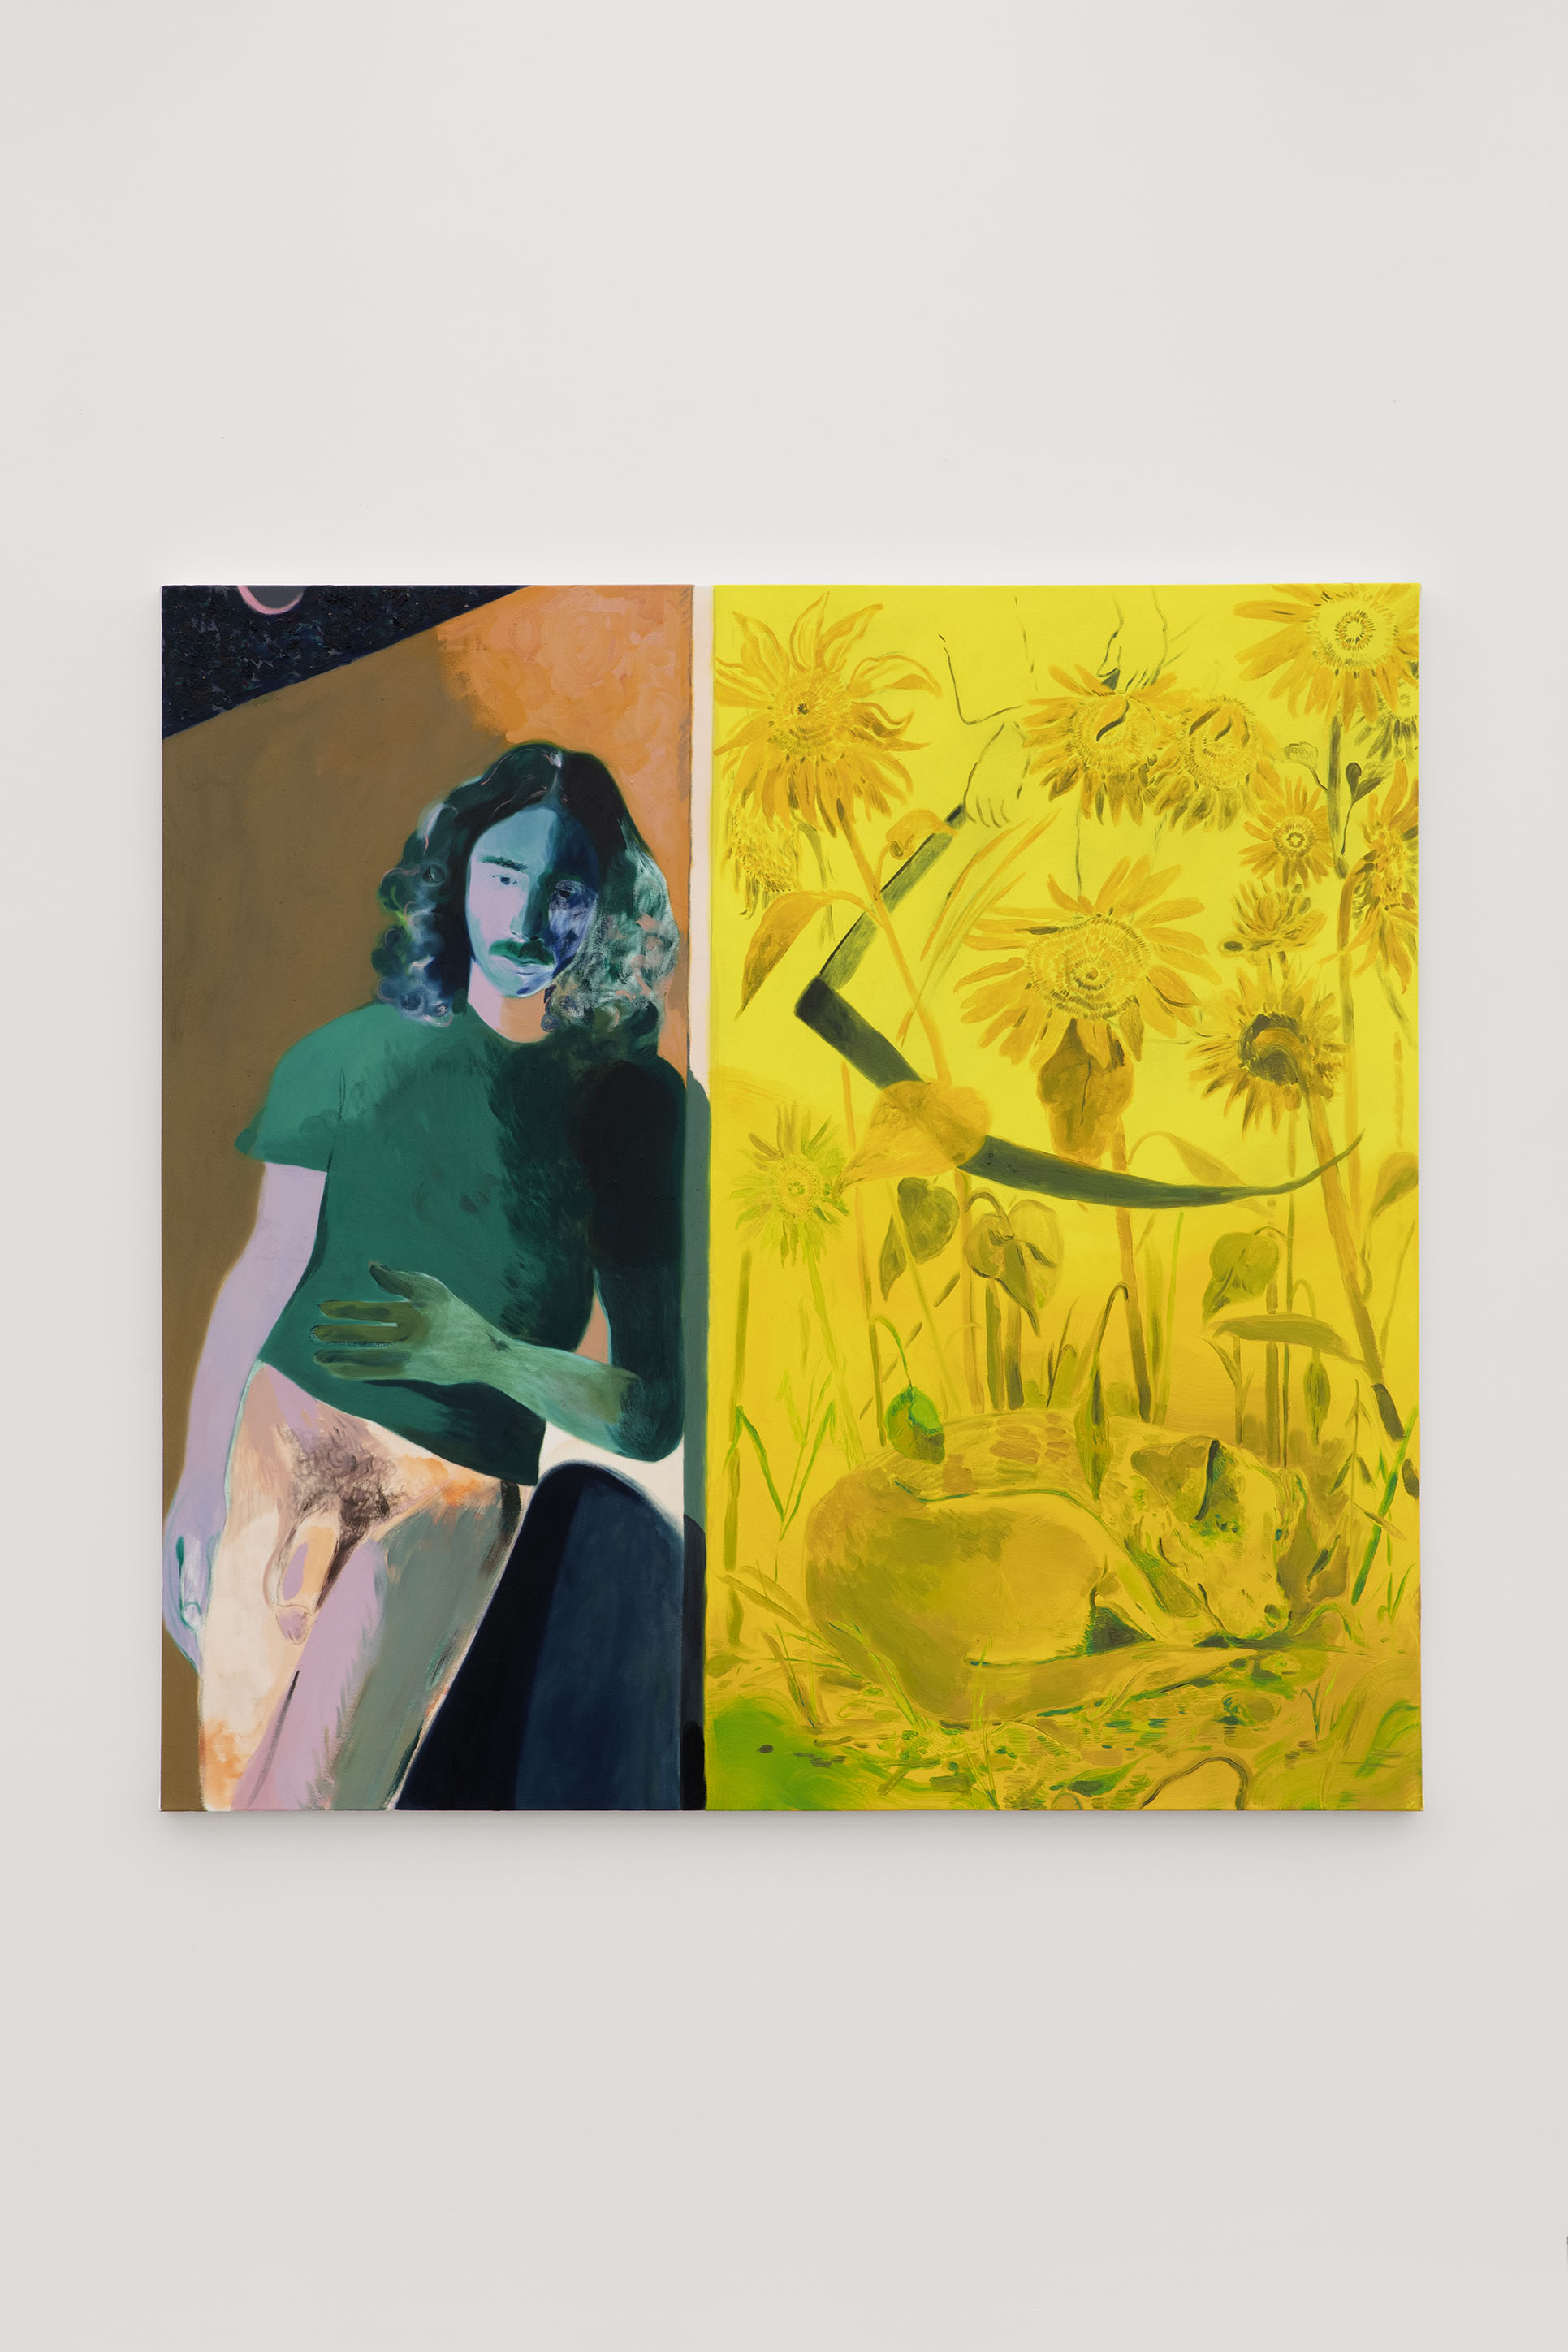 Anthony Cudahy. "Ian / Harvester", 2019. Acrylic and oil on canvas. 183 x 178 cm 